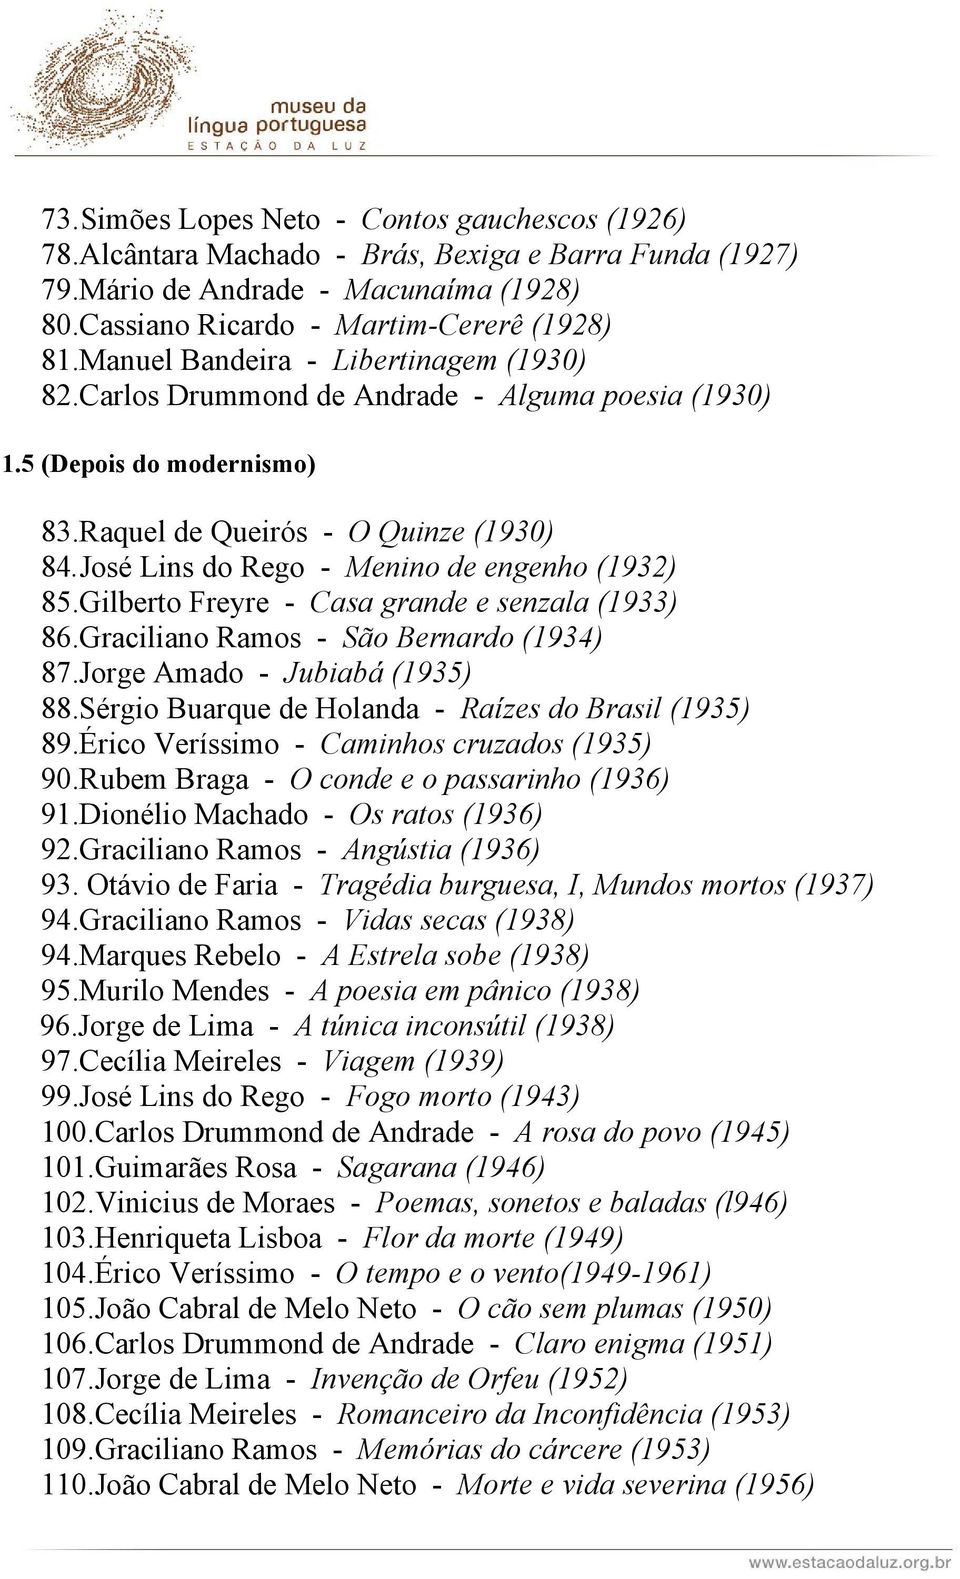 José Lins do Rego - Menino de engenho (1932) 85.Gilberto Freyre - Casa grande e senzala (1933) 86.Graciliano Ramos - São Bernardo (1934) 87.Jorge Amado - Jubiabá (1935) 88.